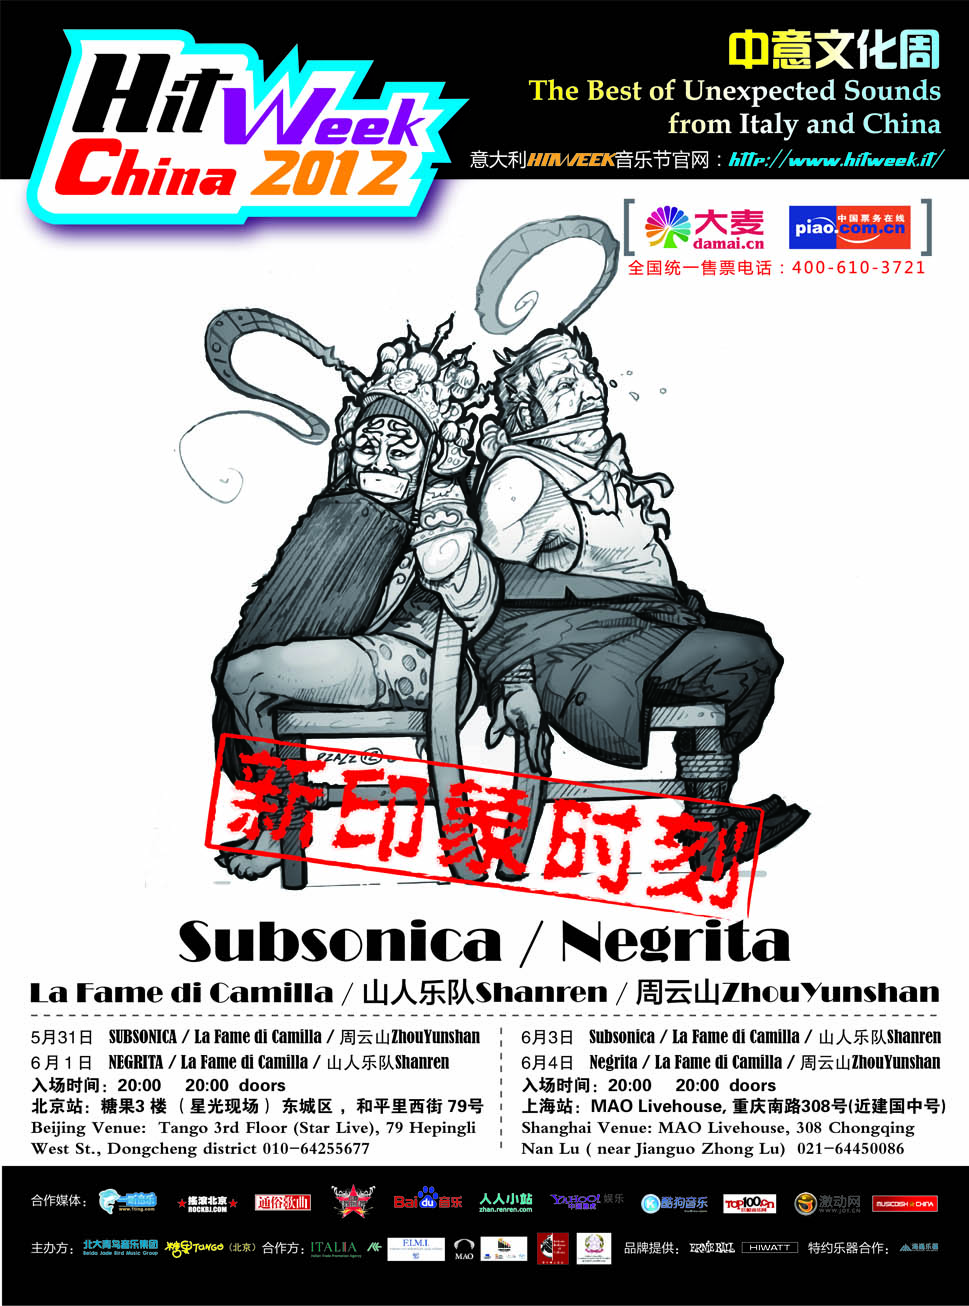 Hit Week China 2012